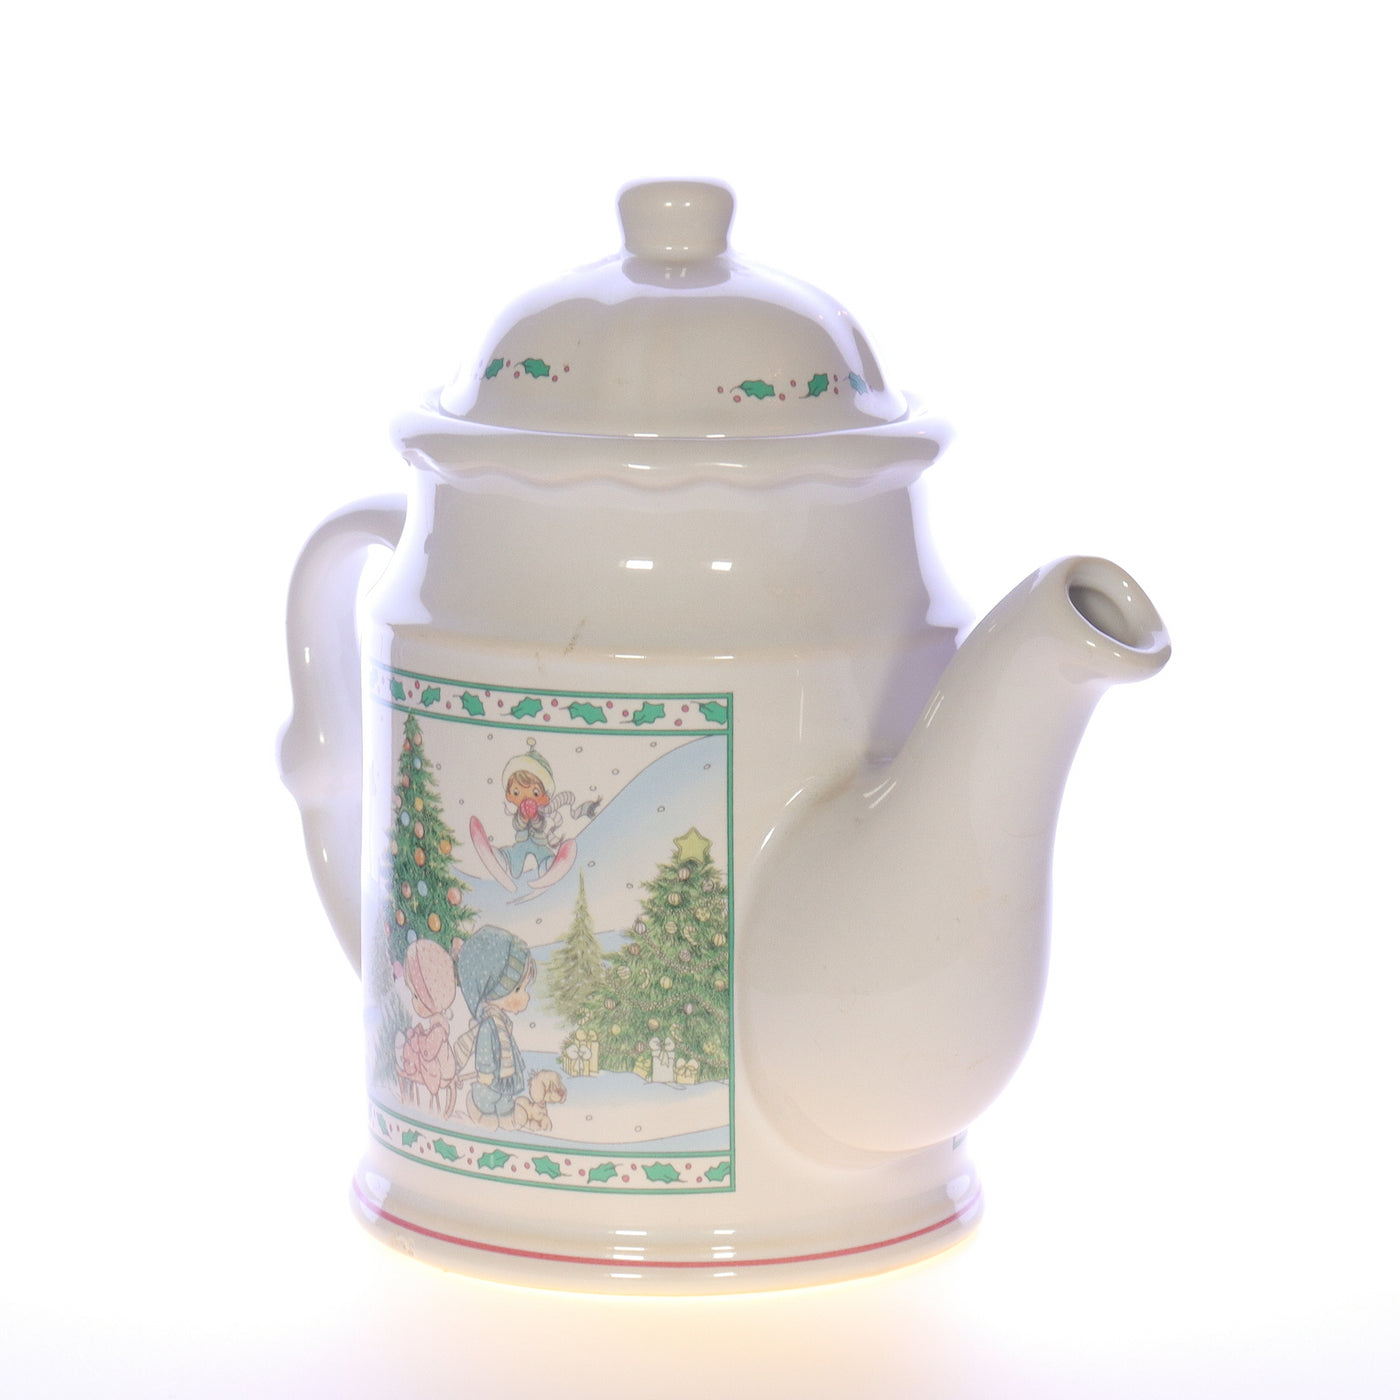 Precious Moments Vintage Porcelain Christmas Teapot 1994 7"